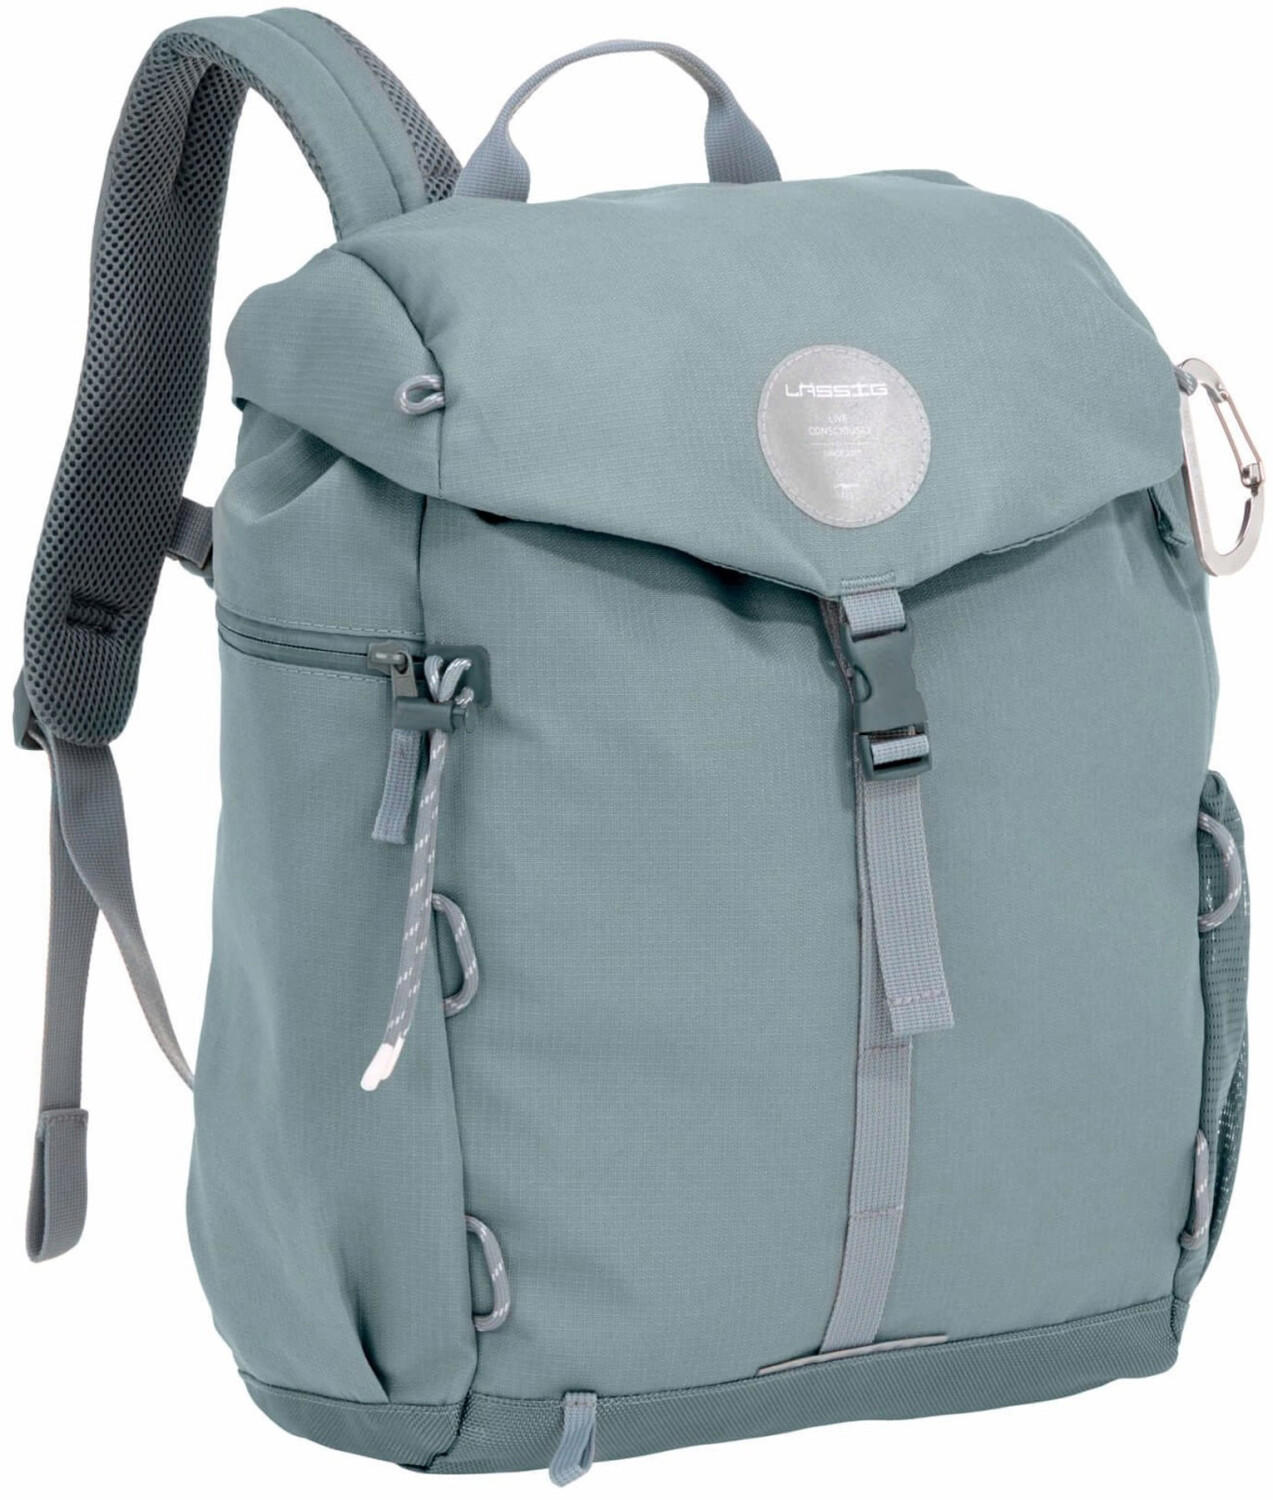 Lassig Green Label Outdoor Backpack